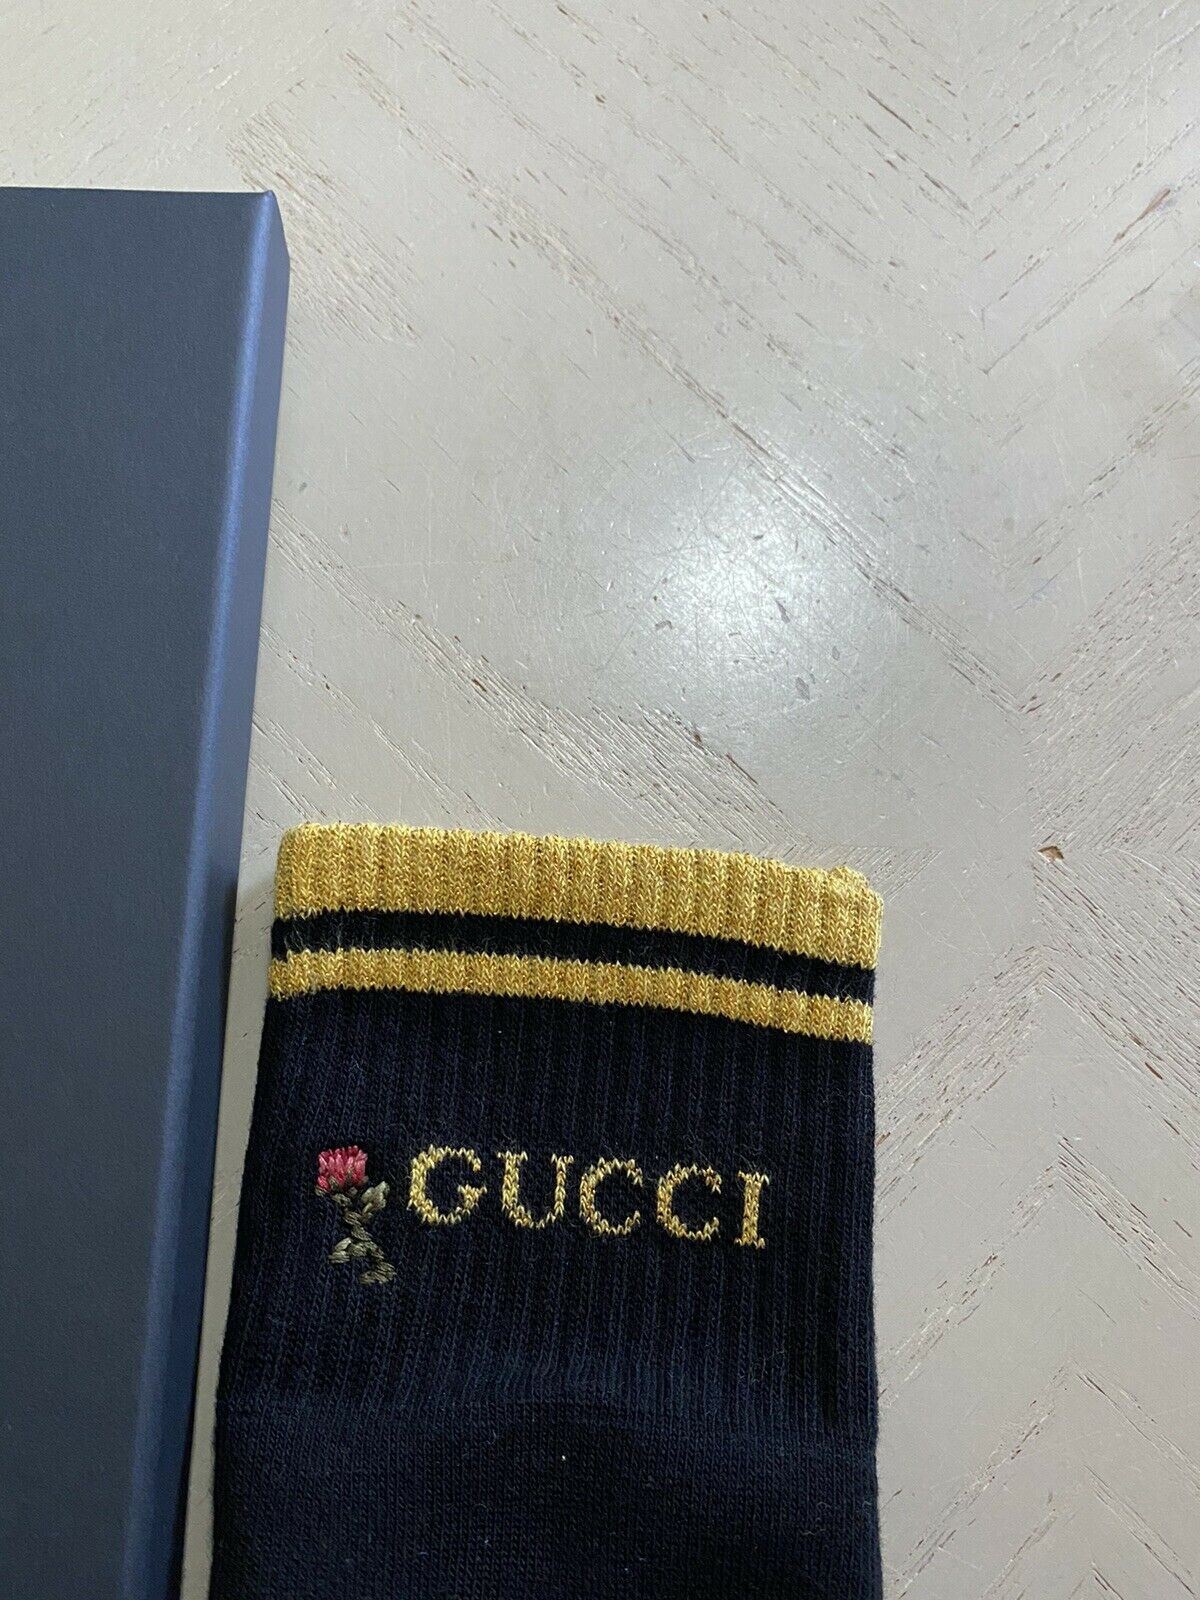 Хлопковые носки NWT Gucci с монограммой Gucci, черные, размер M, Италия